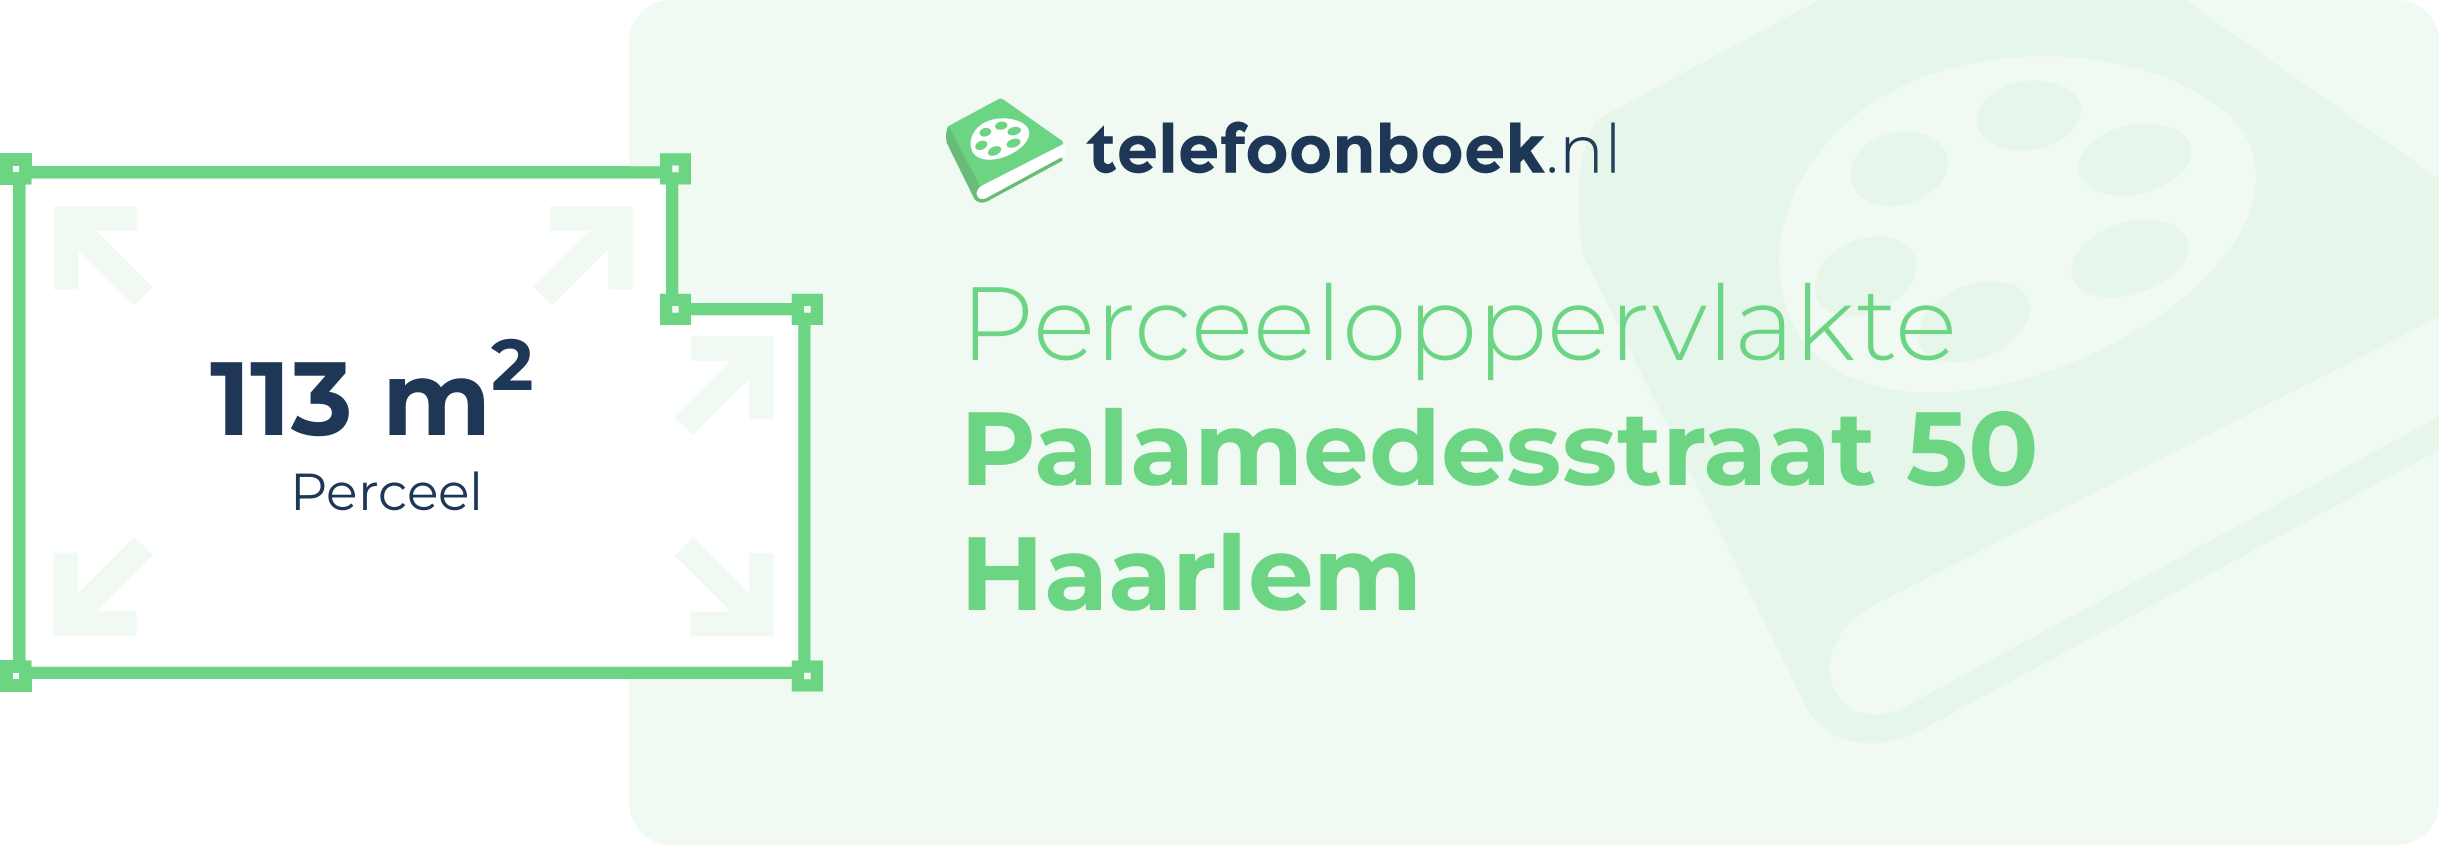 Perceeloppervlakte Palamedesstraat 50 Haarlem